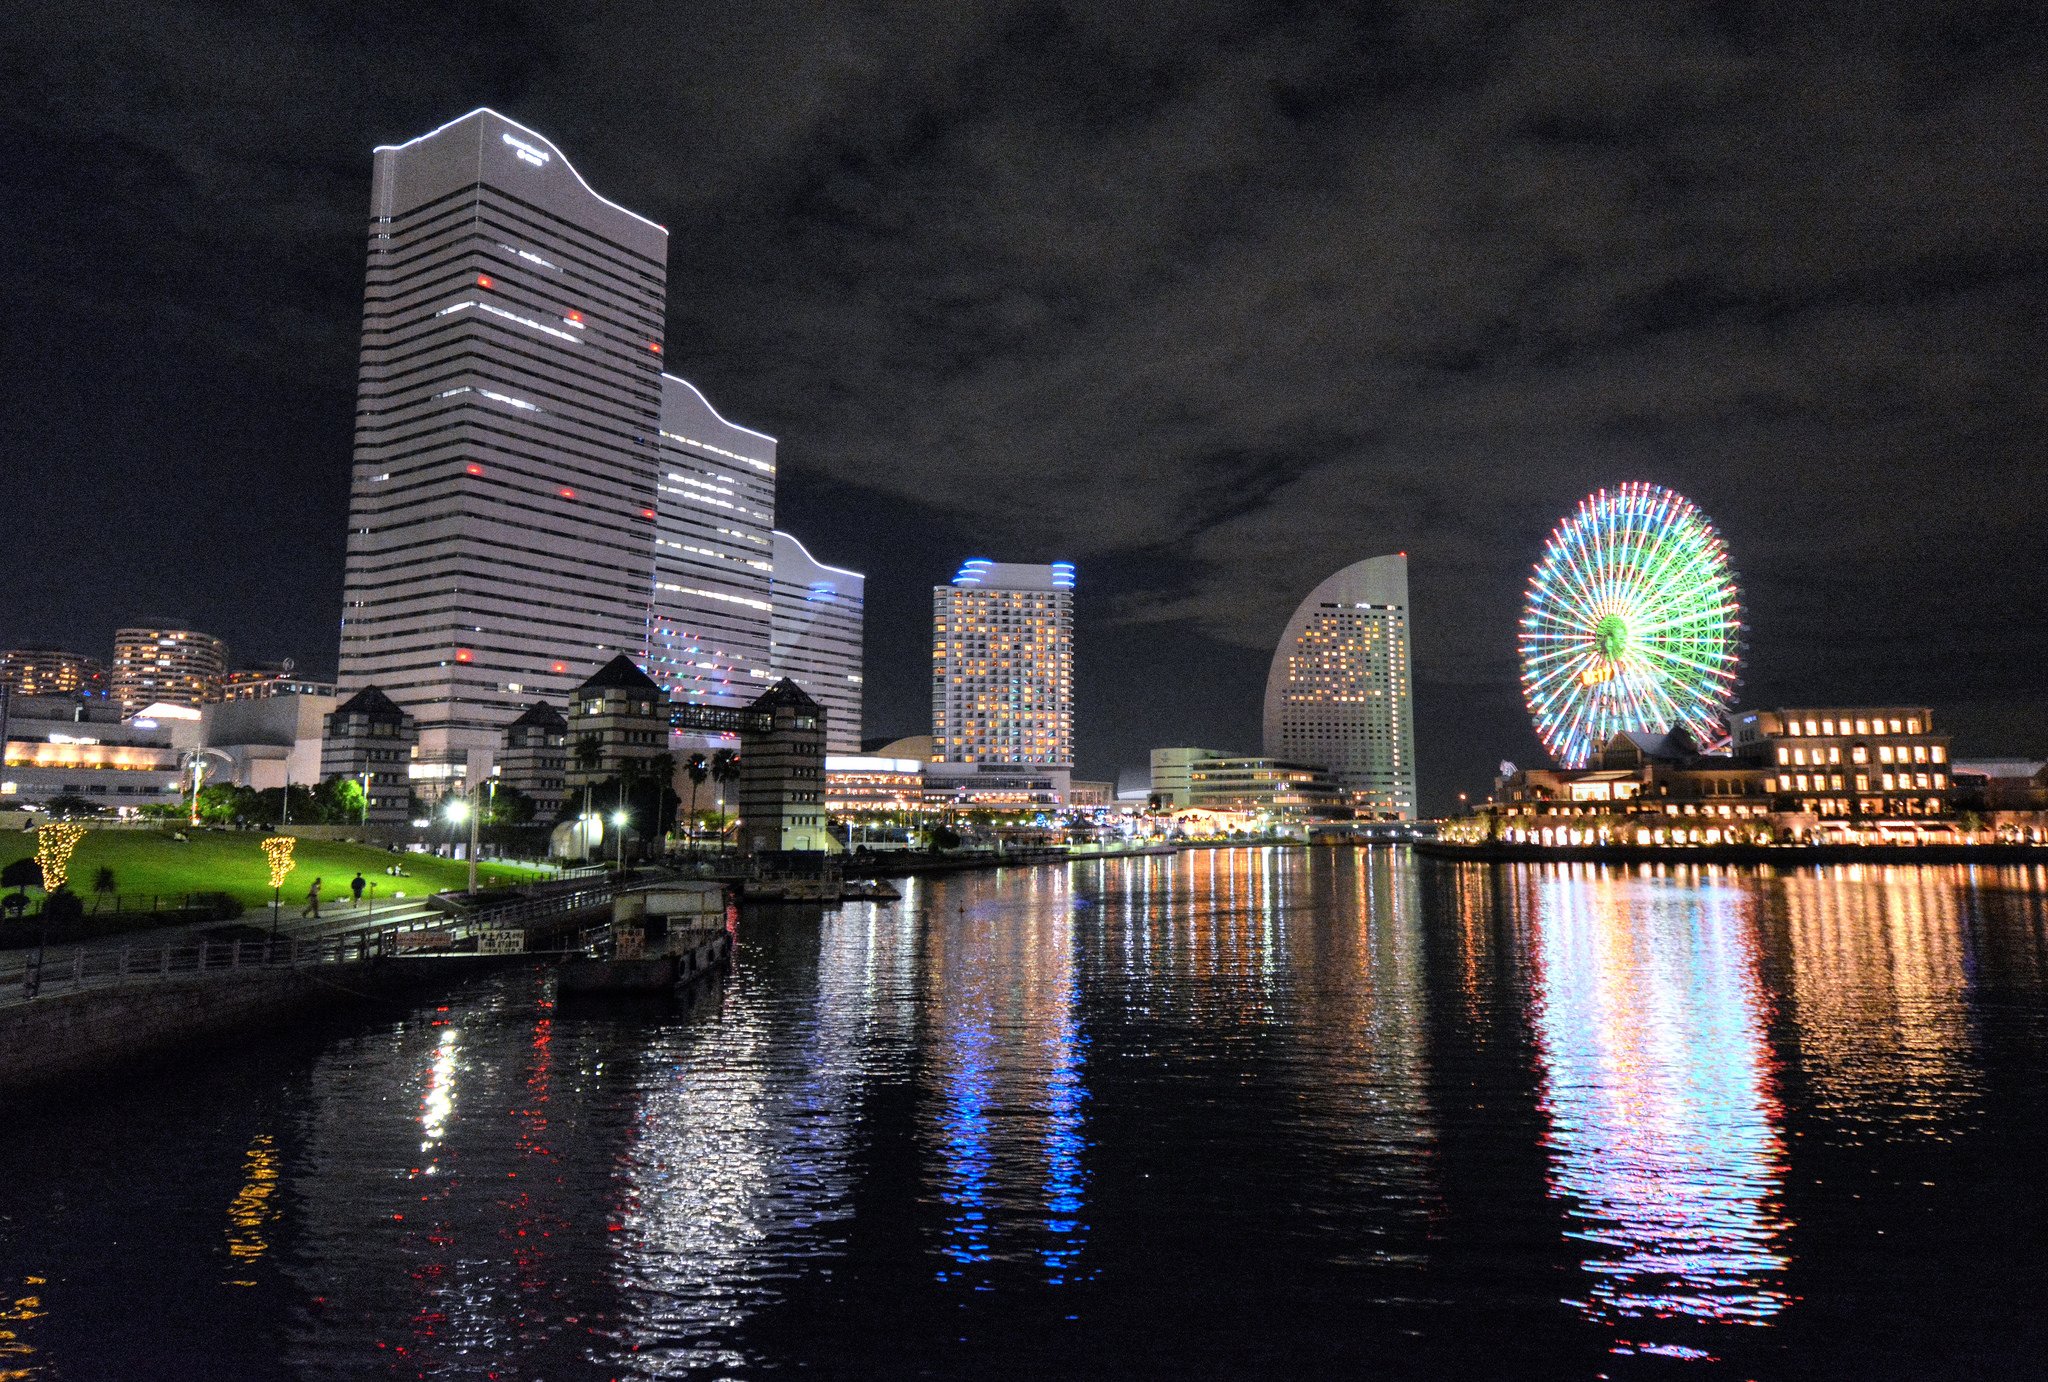 Asia building. Йокогама Япония. Йокогама город в Японии. Йокогама достопримечательности. Набережная реки Накамура города Йокогама.